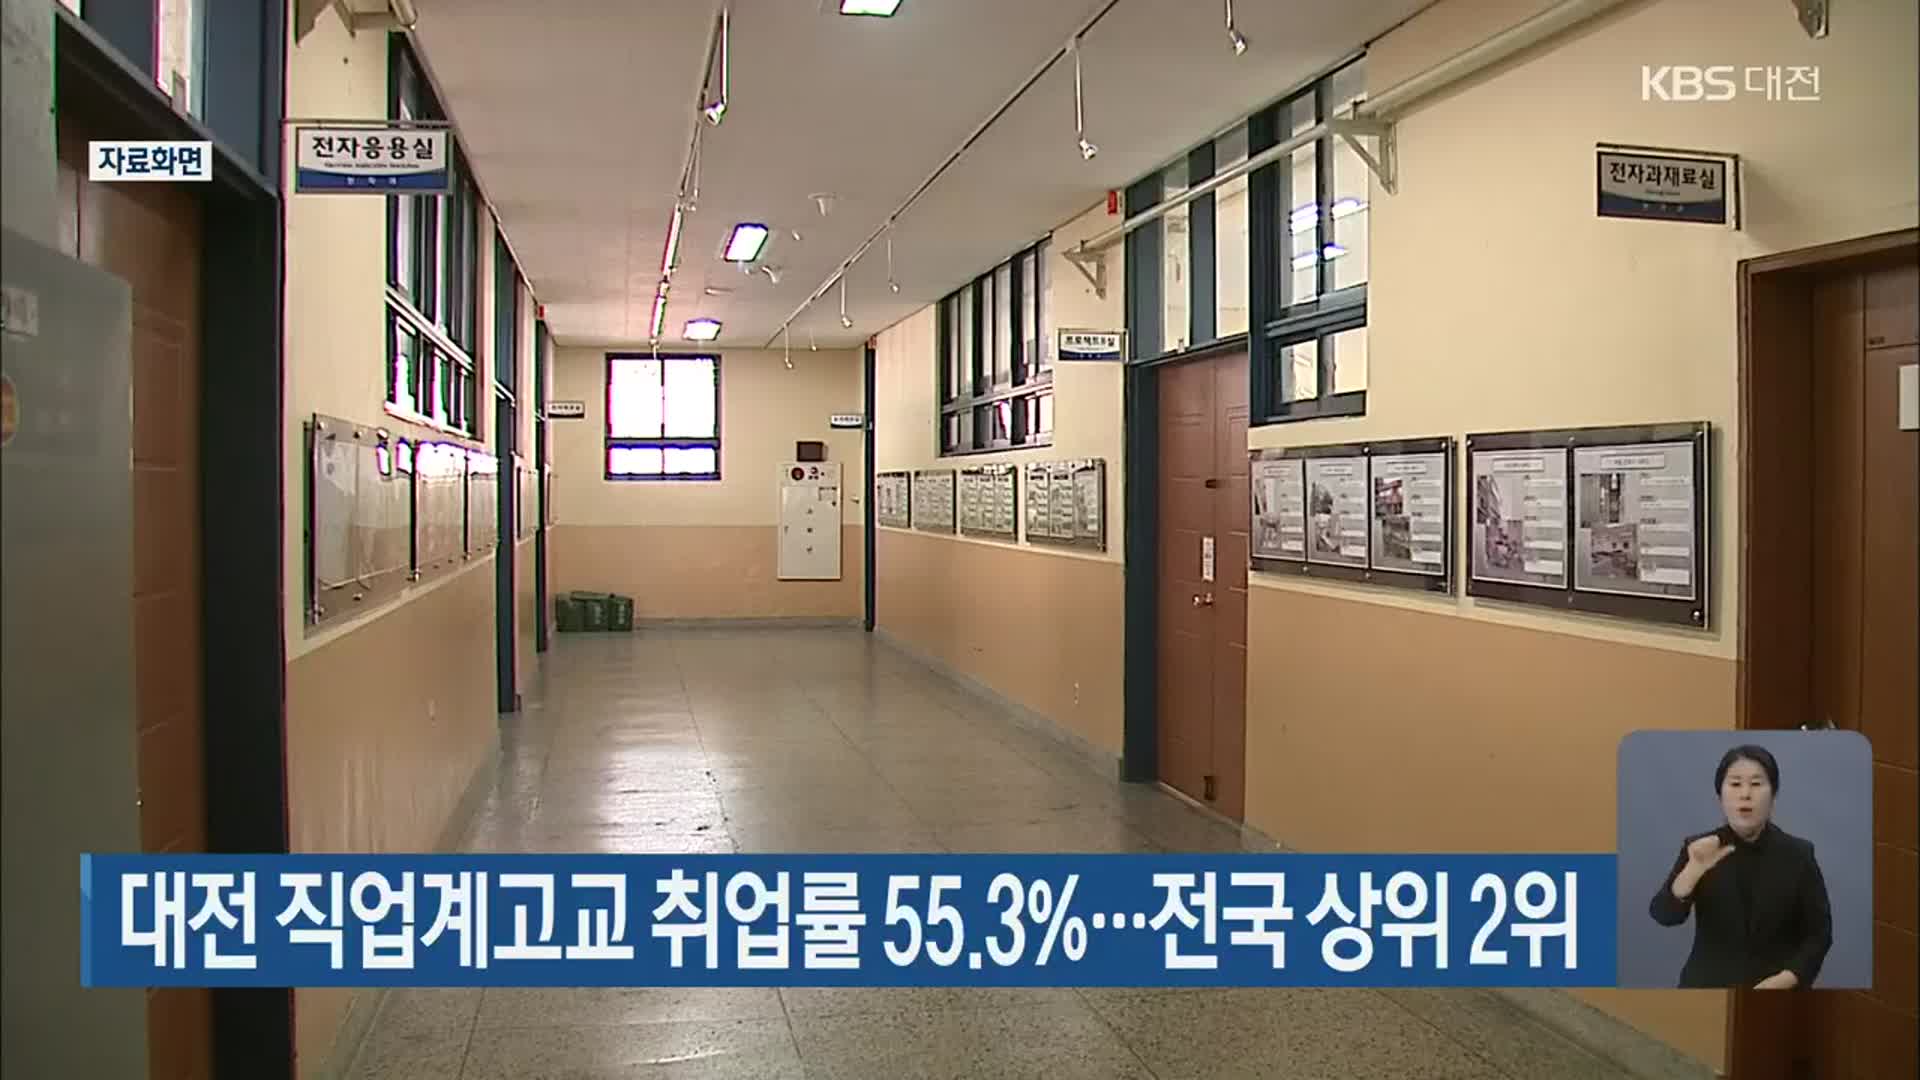 대전 직업계고교 취업률 55.3%…전국 상위 2위